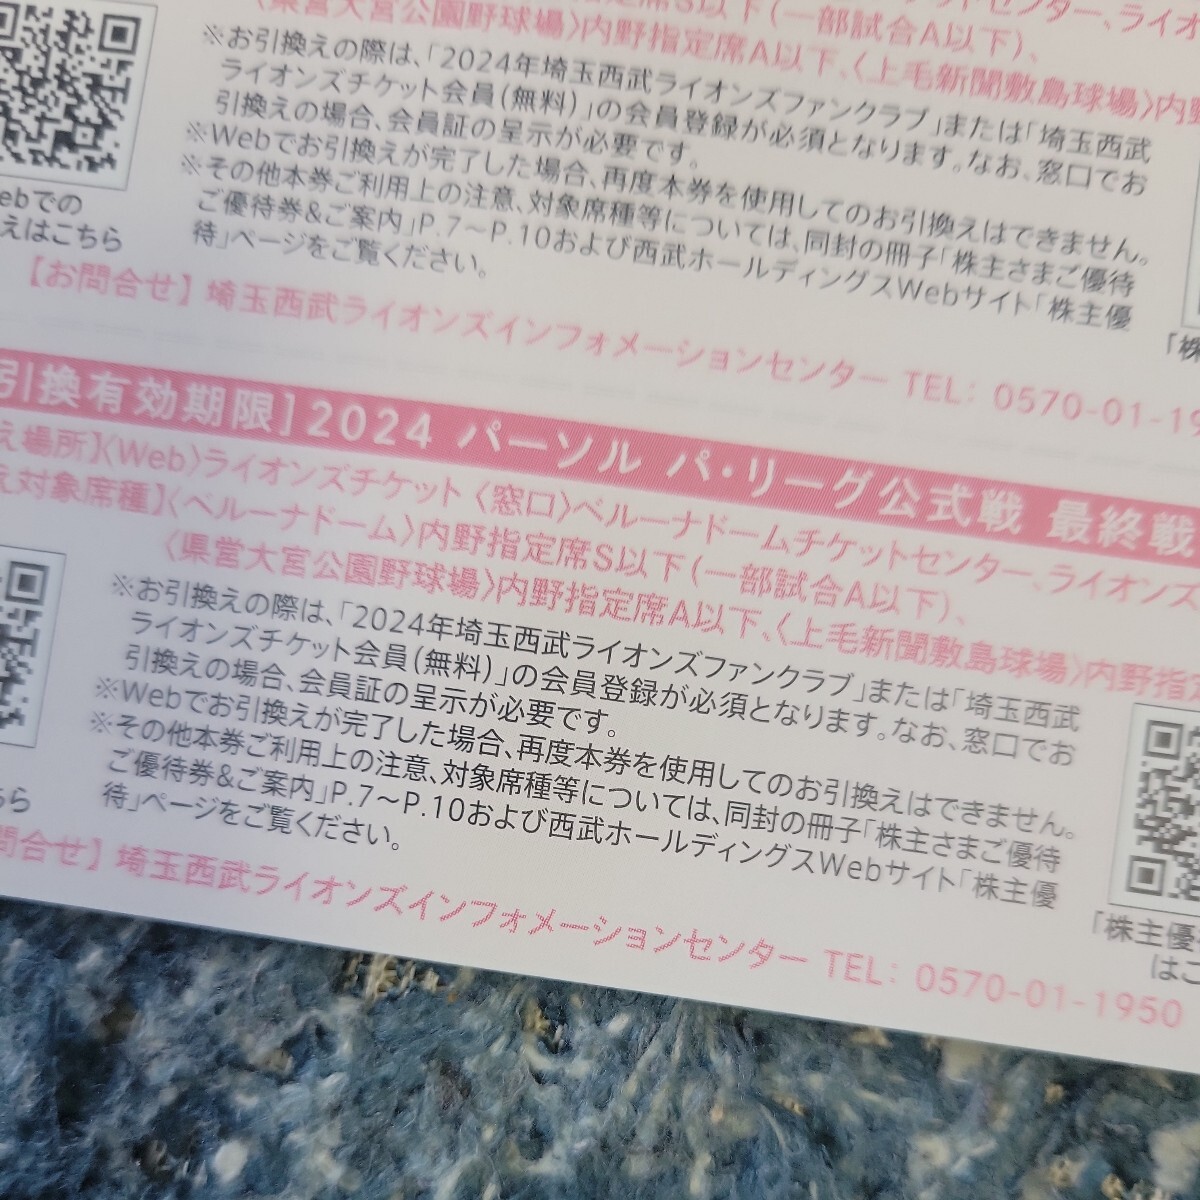  Saitama Seibu Lions акционер гостеприимство внутри . указание сиденье талон 2024 2 листов 